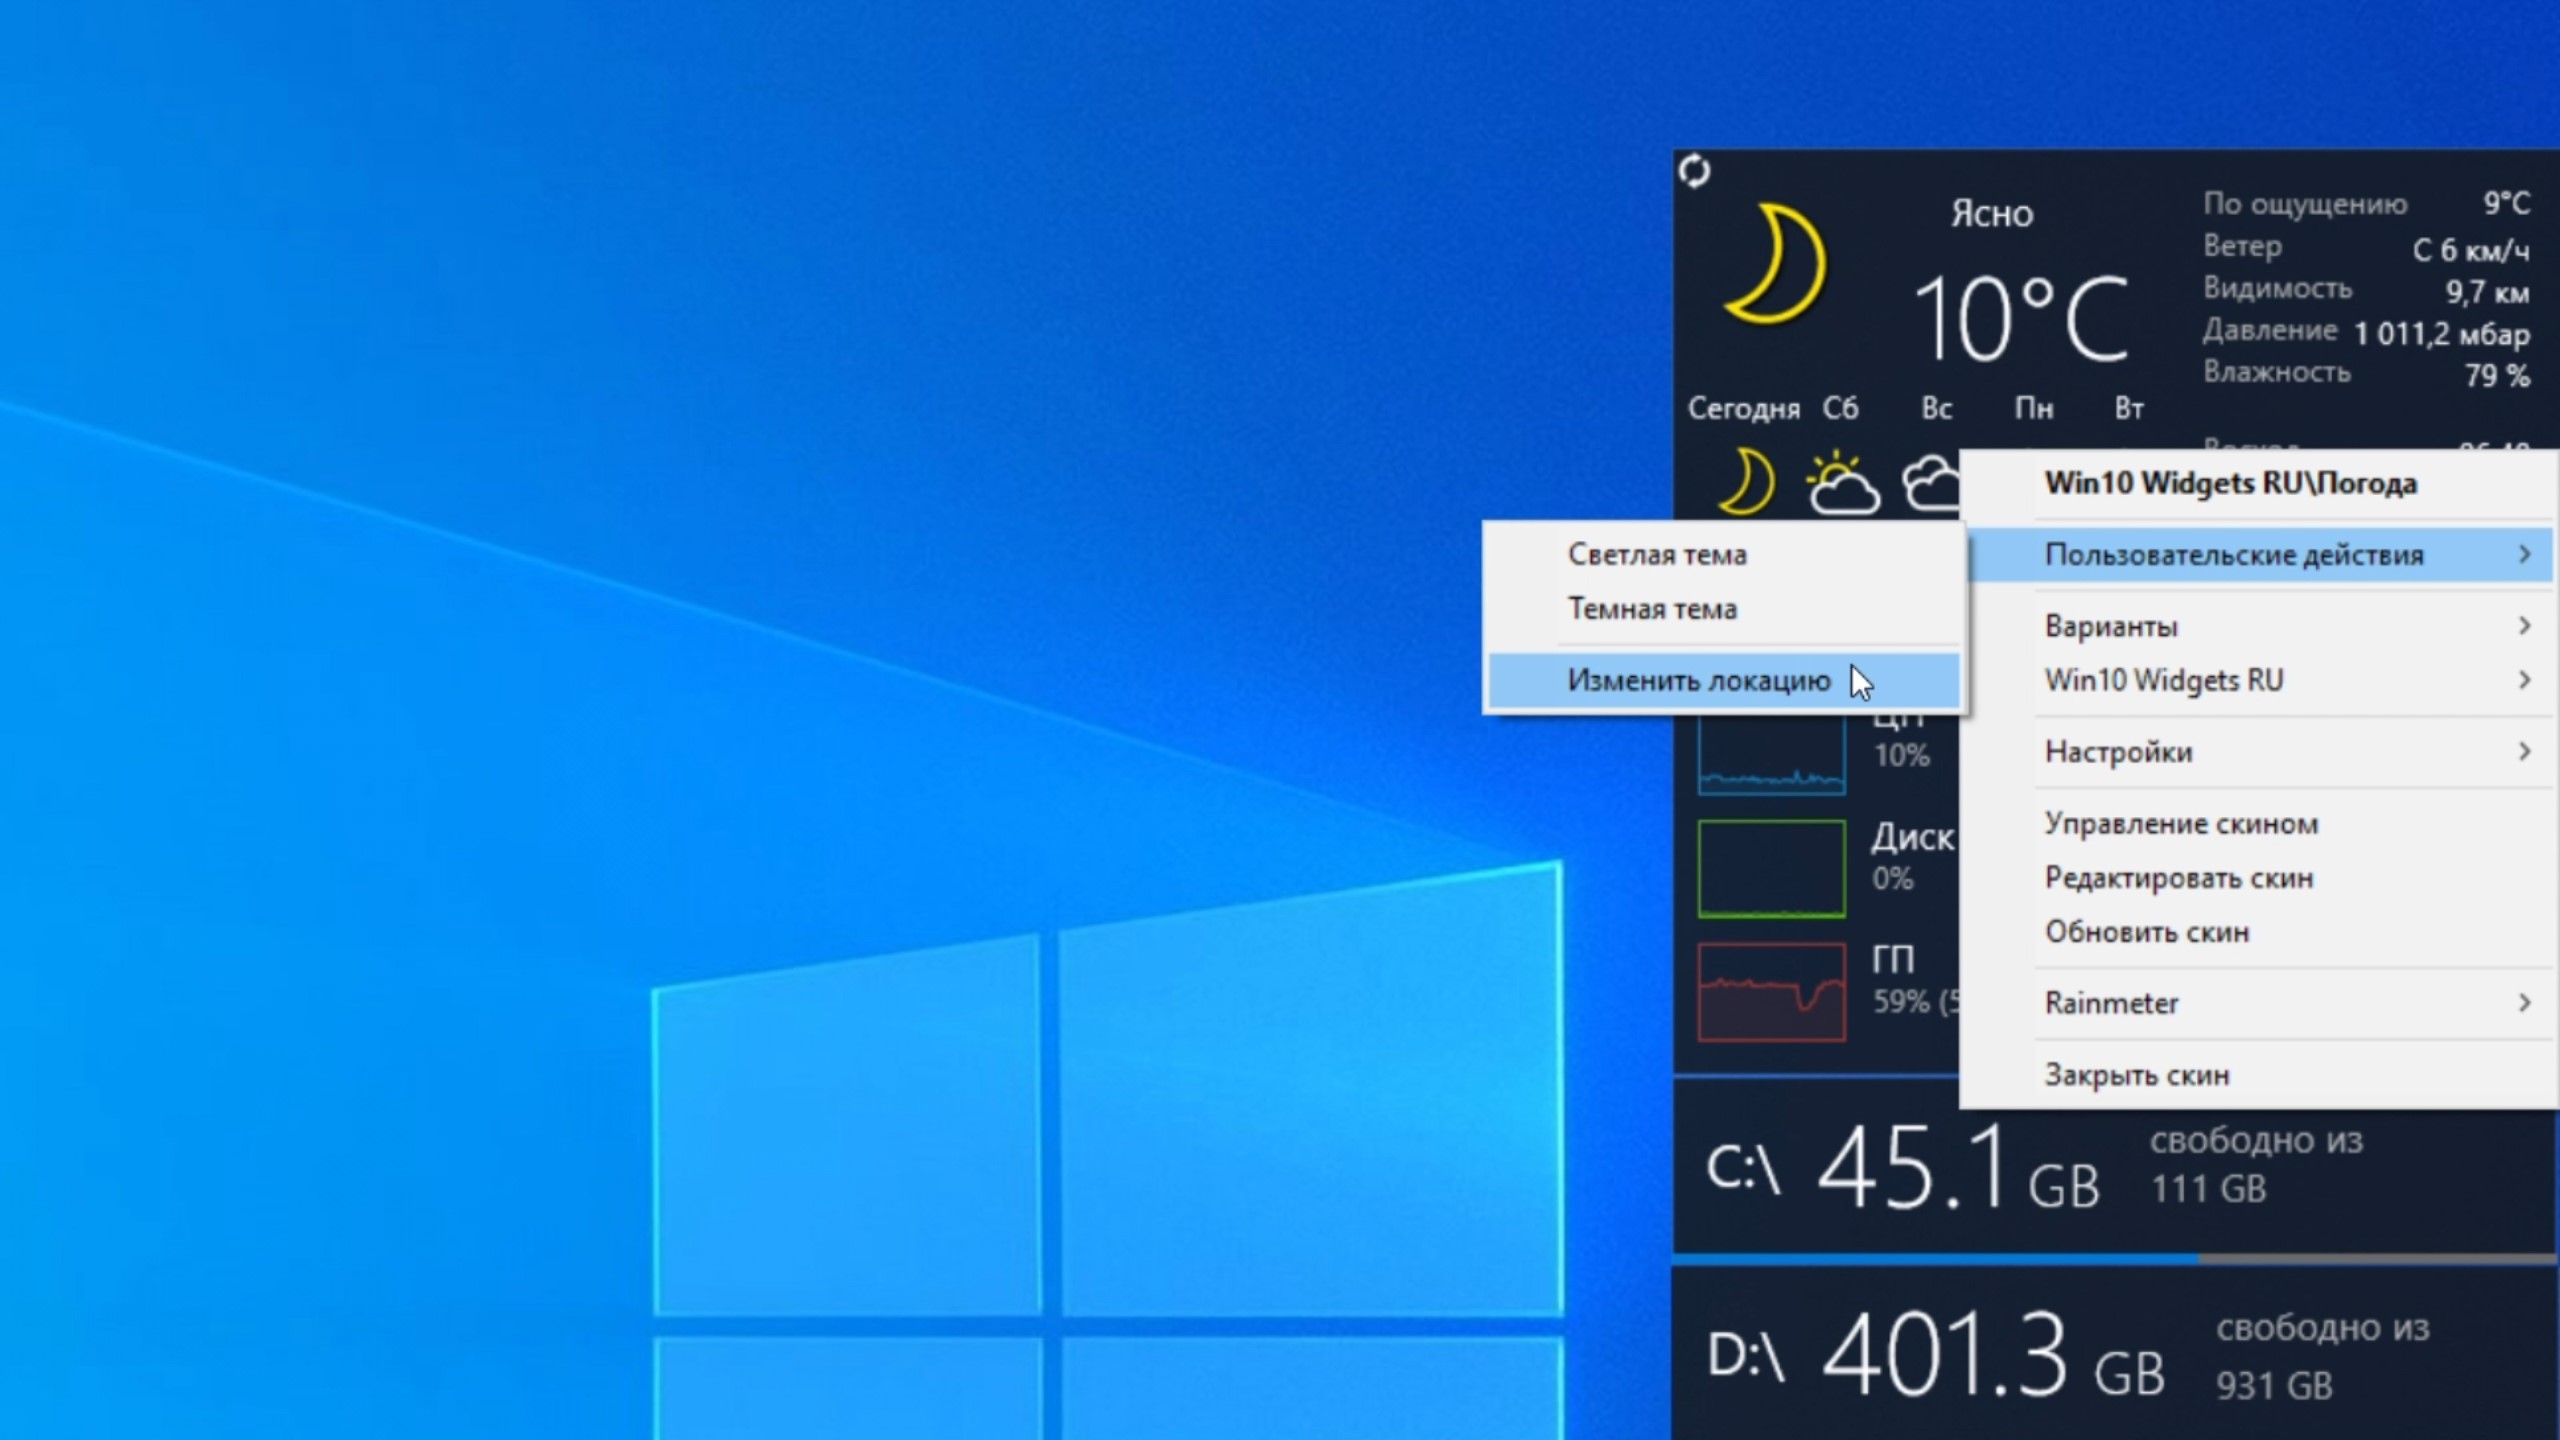 Виджет часов для windows 10. Мини приложения Windows 10. Виджеты для Windows. Виджеты виндовс. Виджет для Windows 10.